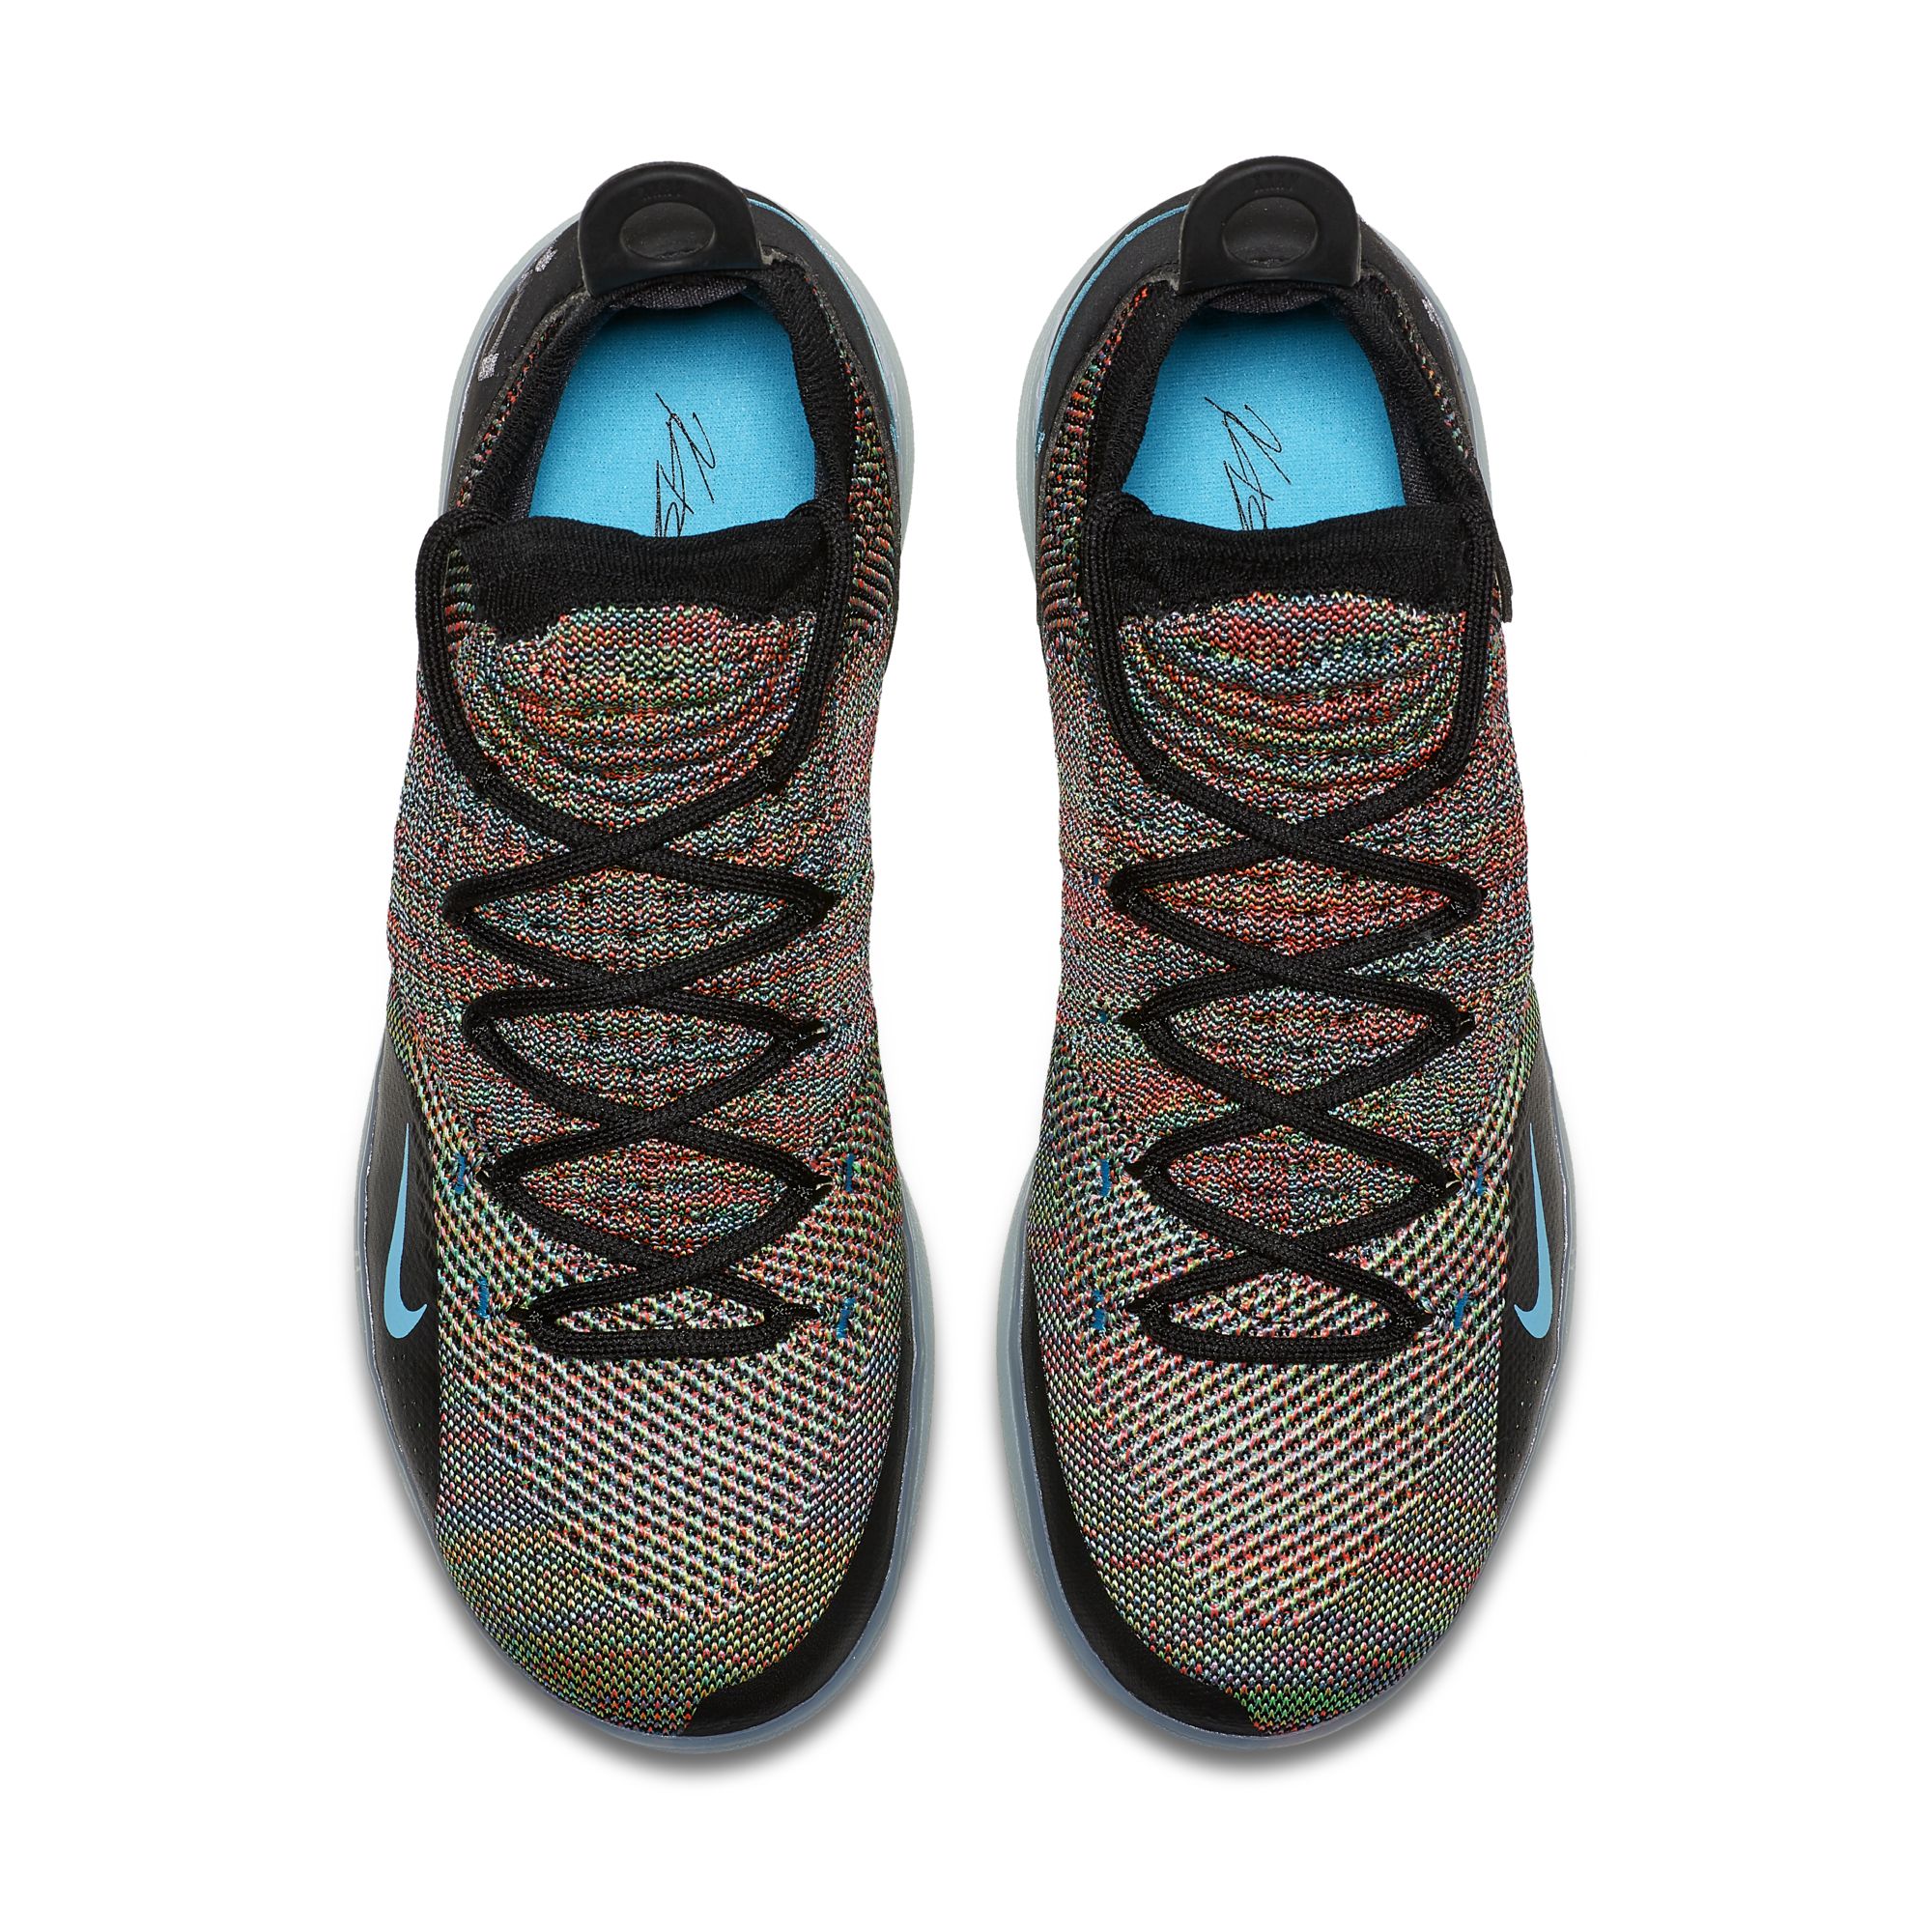 New Nike KD 11 'Multicolor' Leaks Online - WearTesters